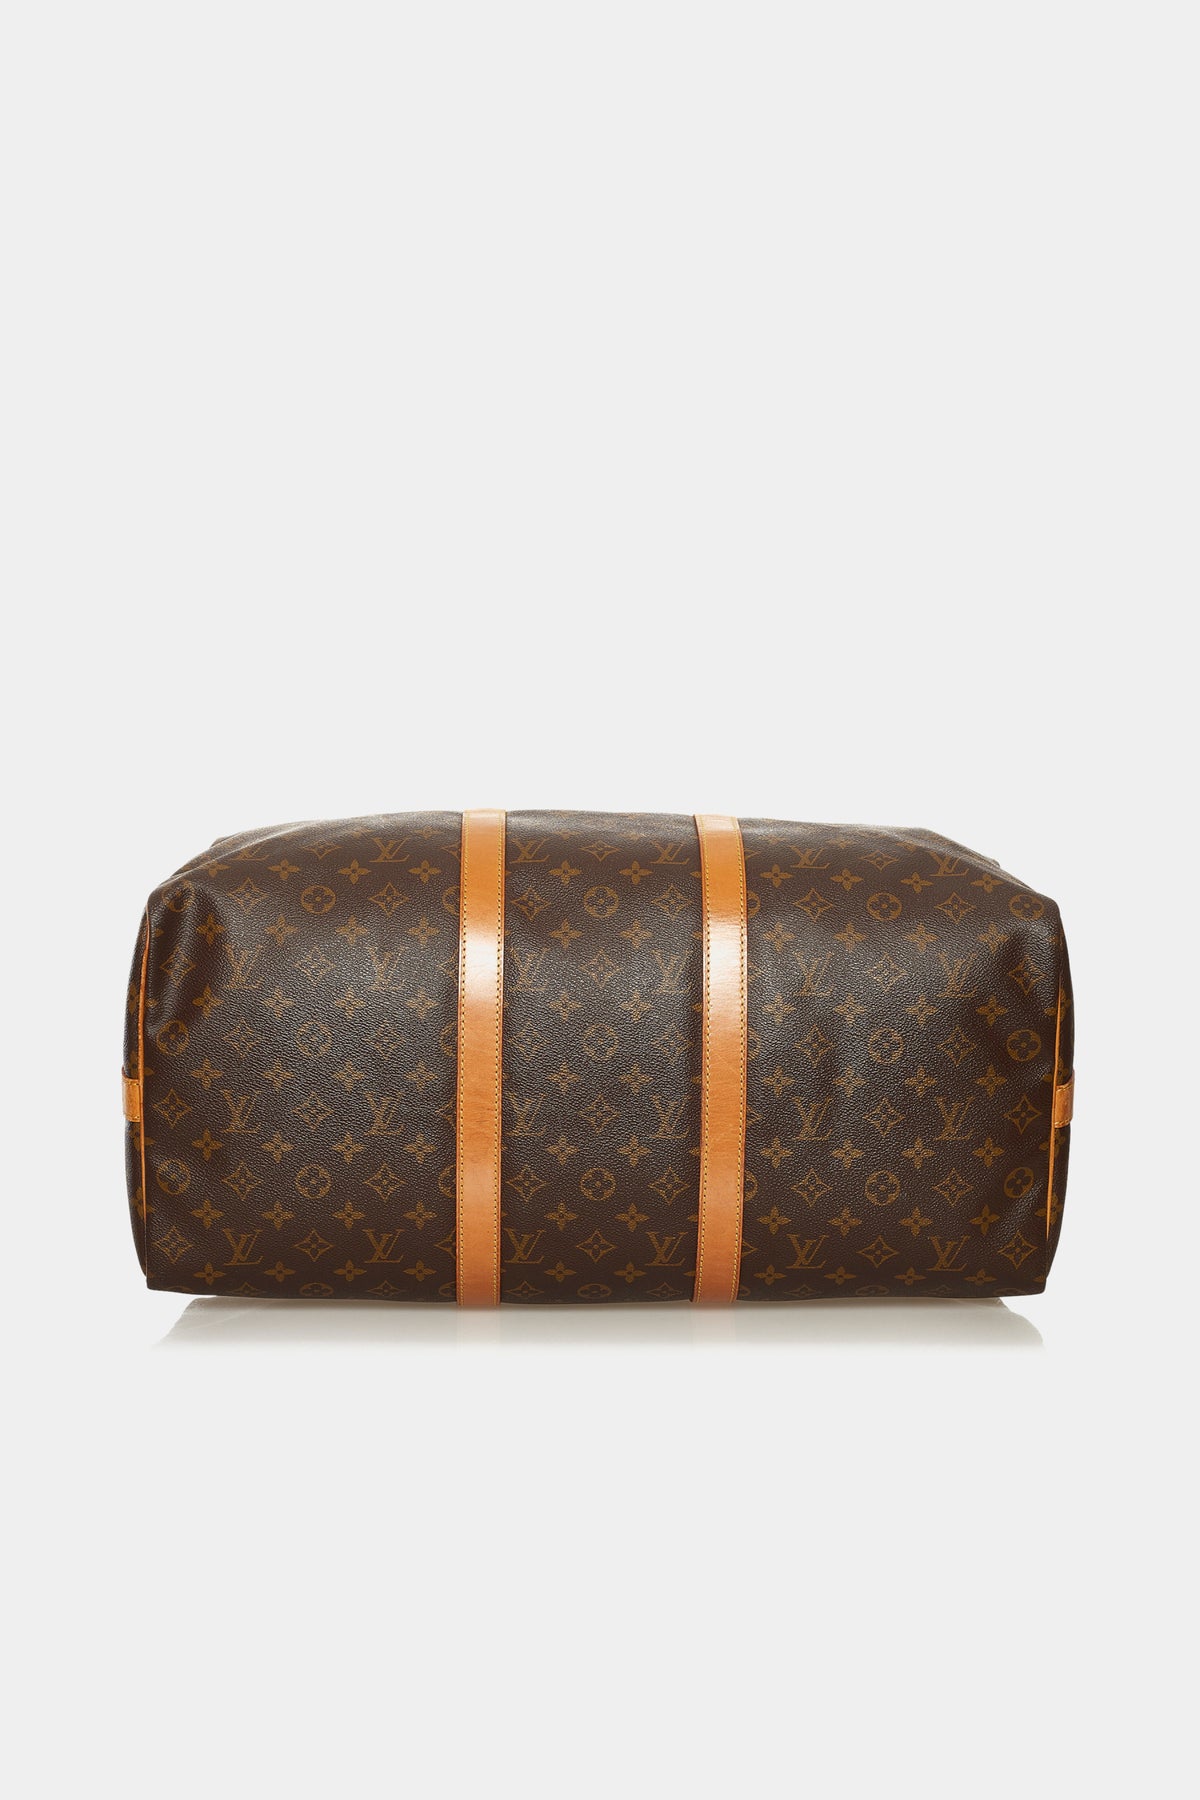 Louis Vuitton Reversible Keepall Bandoulière 50 Monogram Textile Travel Bag